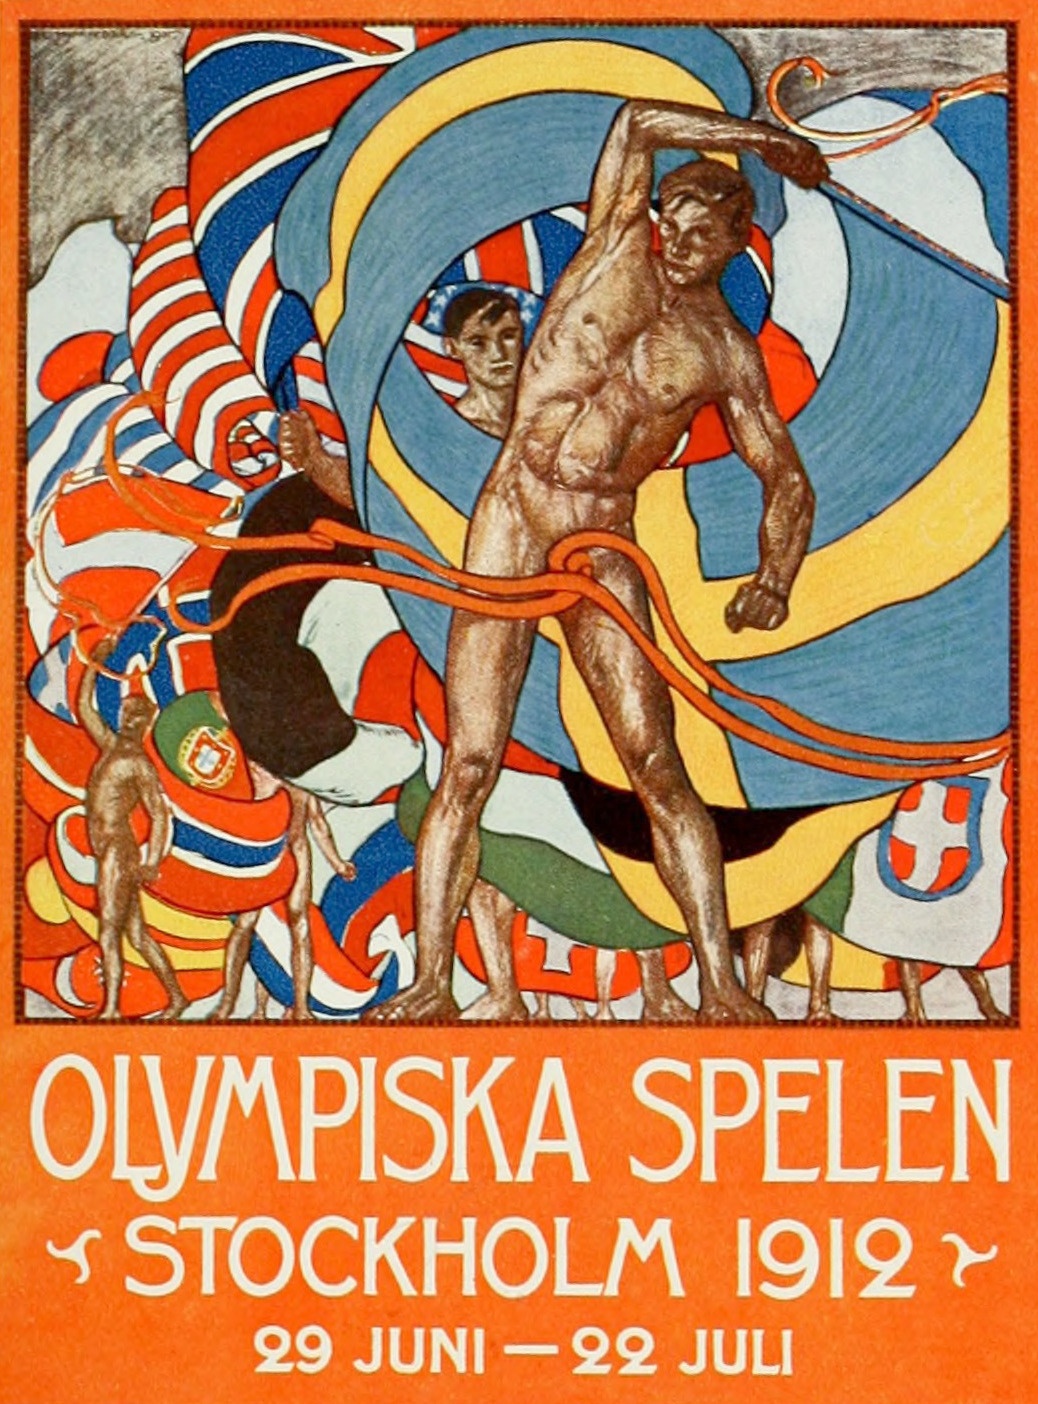 Två icke-vita deltagare kom med i USA:s delegation till OS i Stockholm 1912.